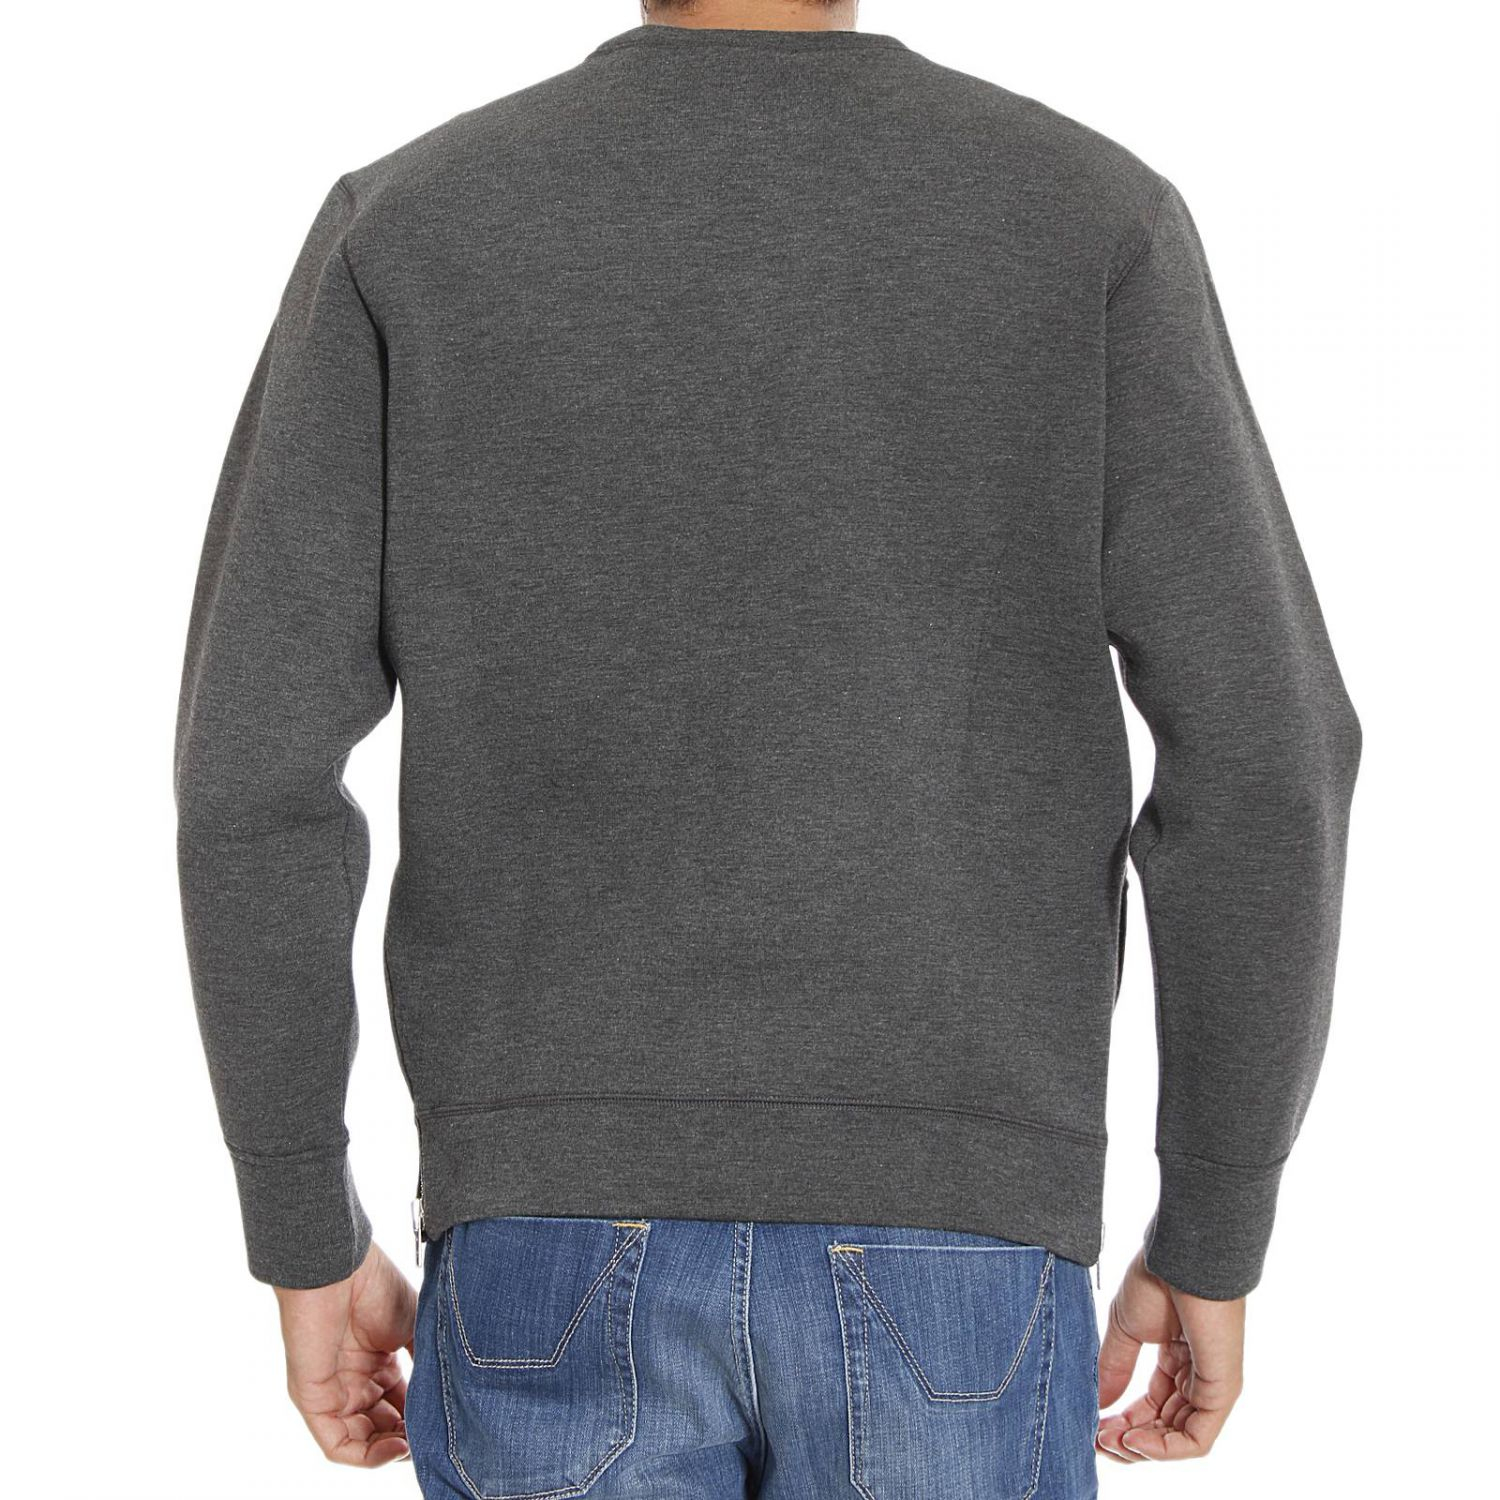 Lyst - Diesel Sweater in Gray for Men